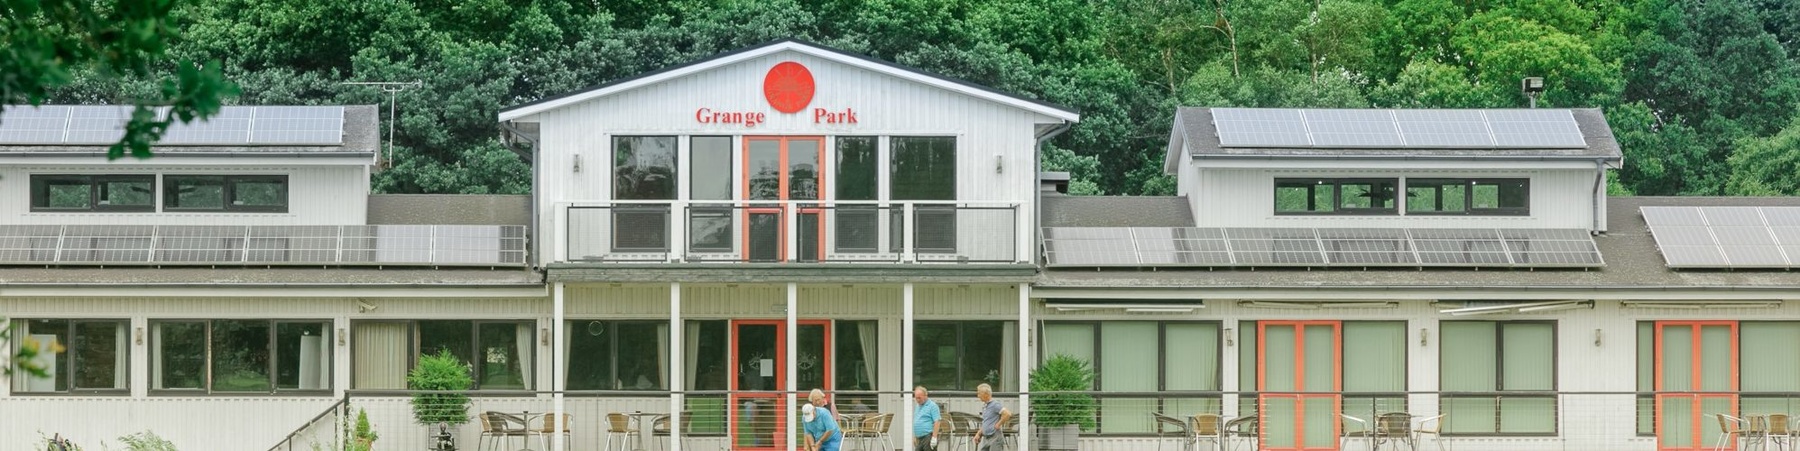 Grange Park 1